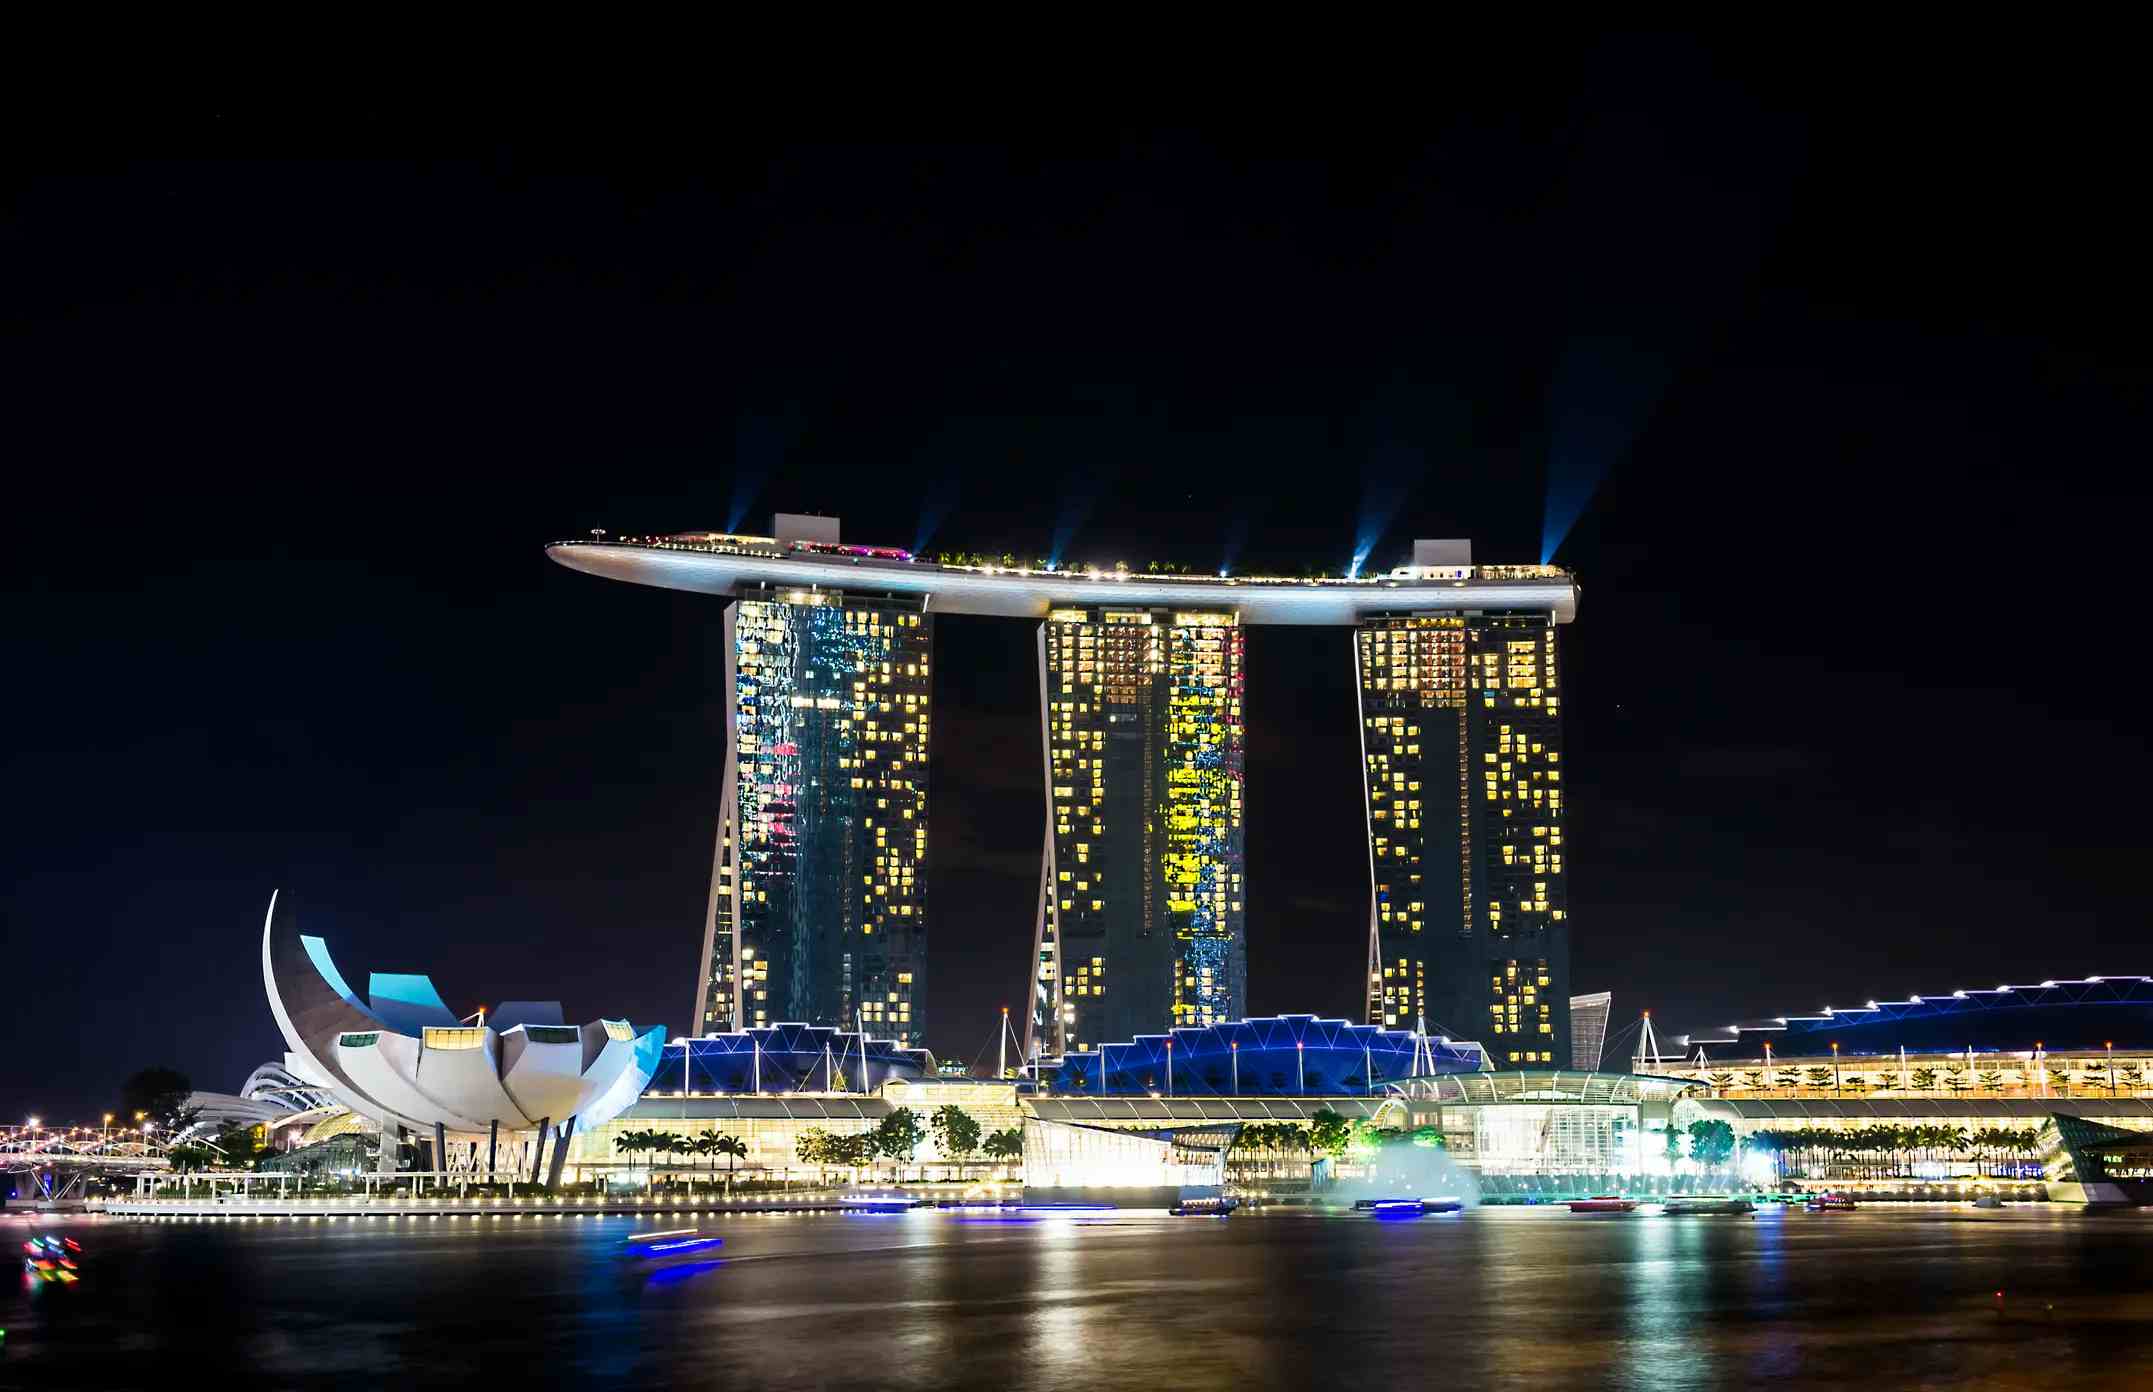 Marina Bay Sands Singapore image